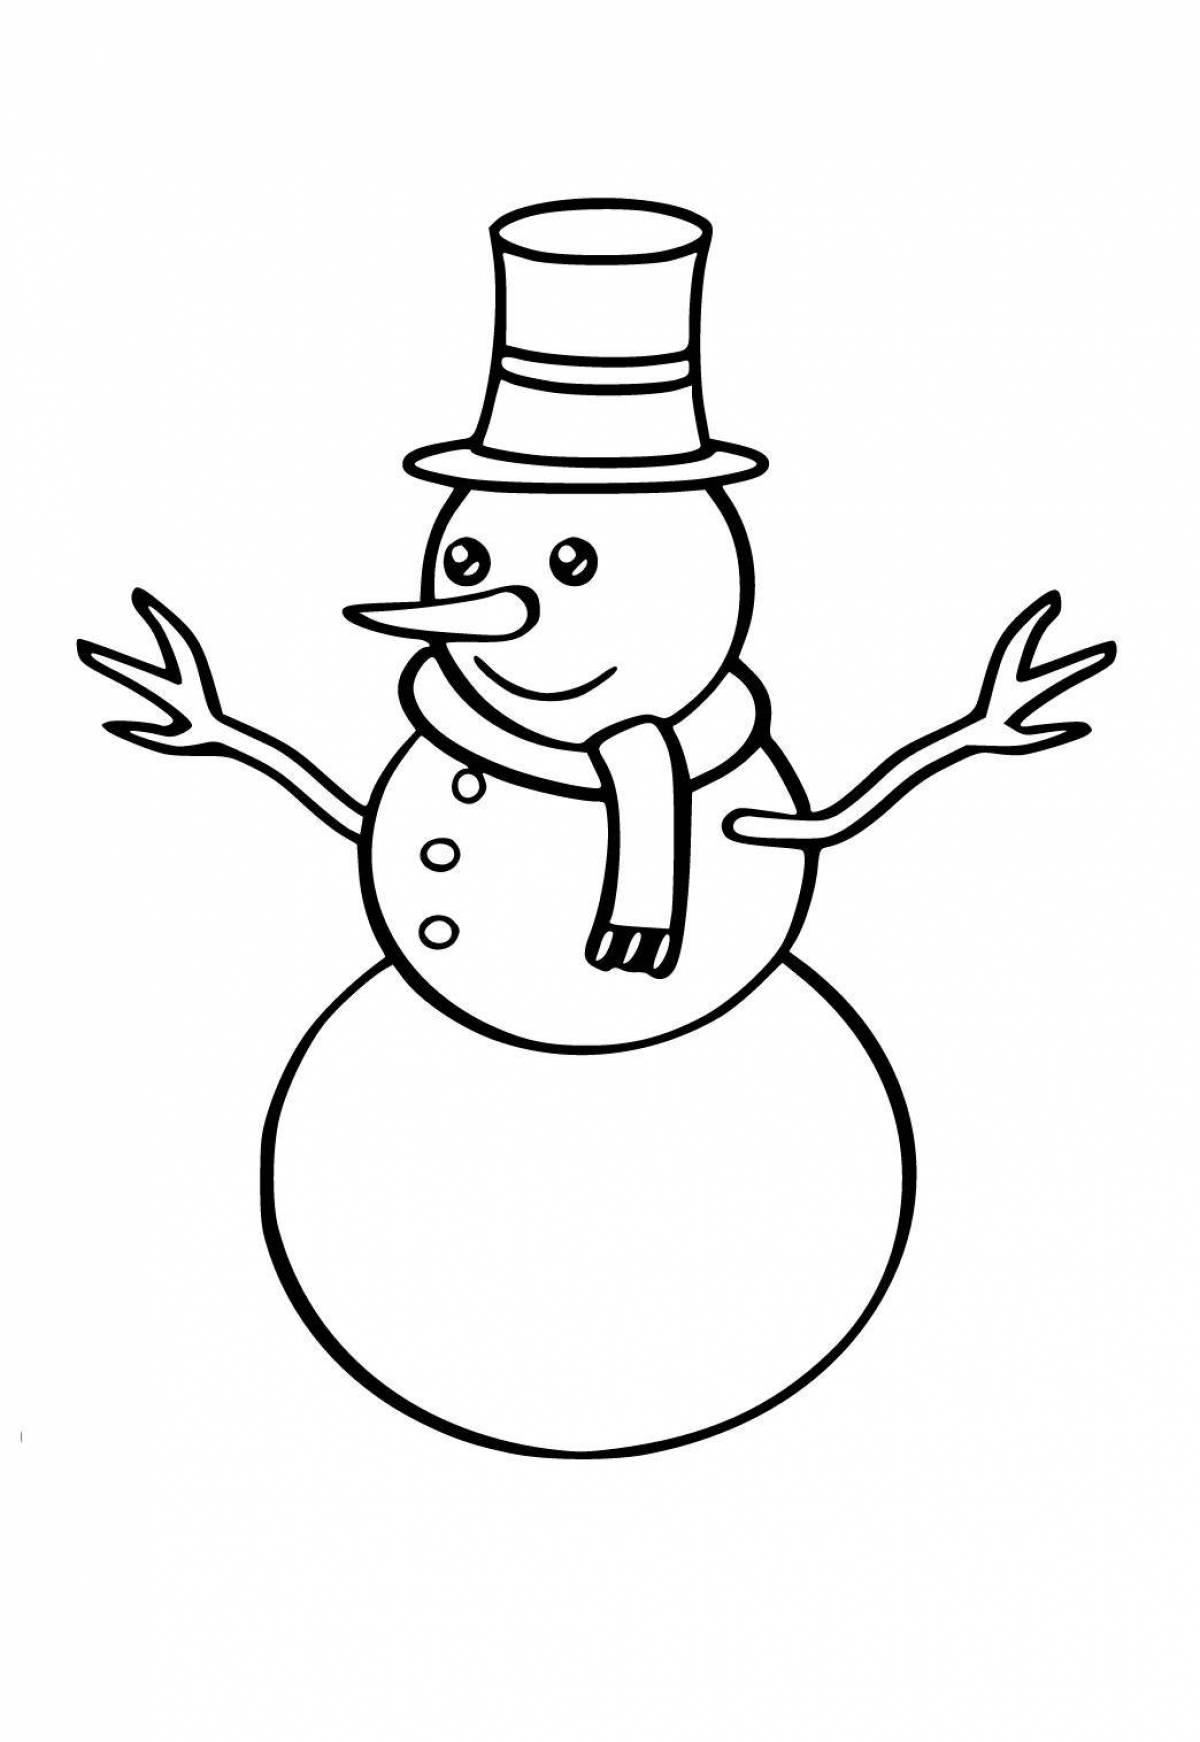 Забавная раскраска снеговик для детей 6-7 лет